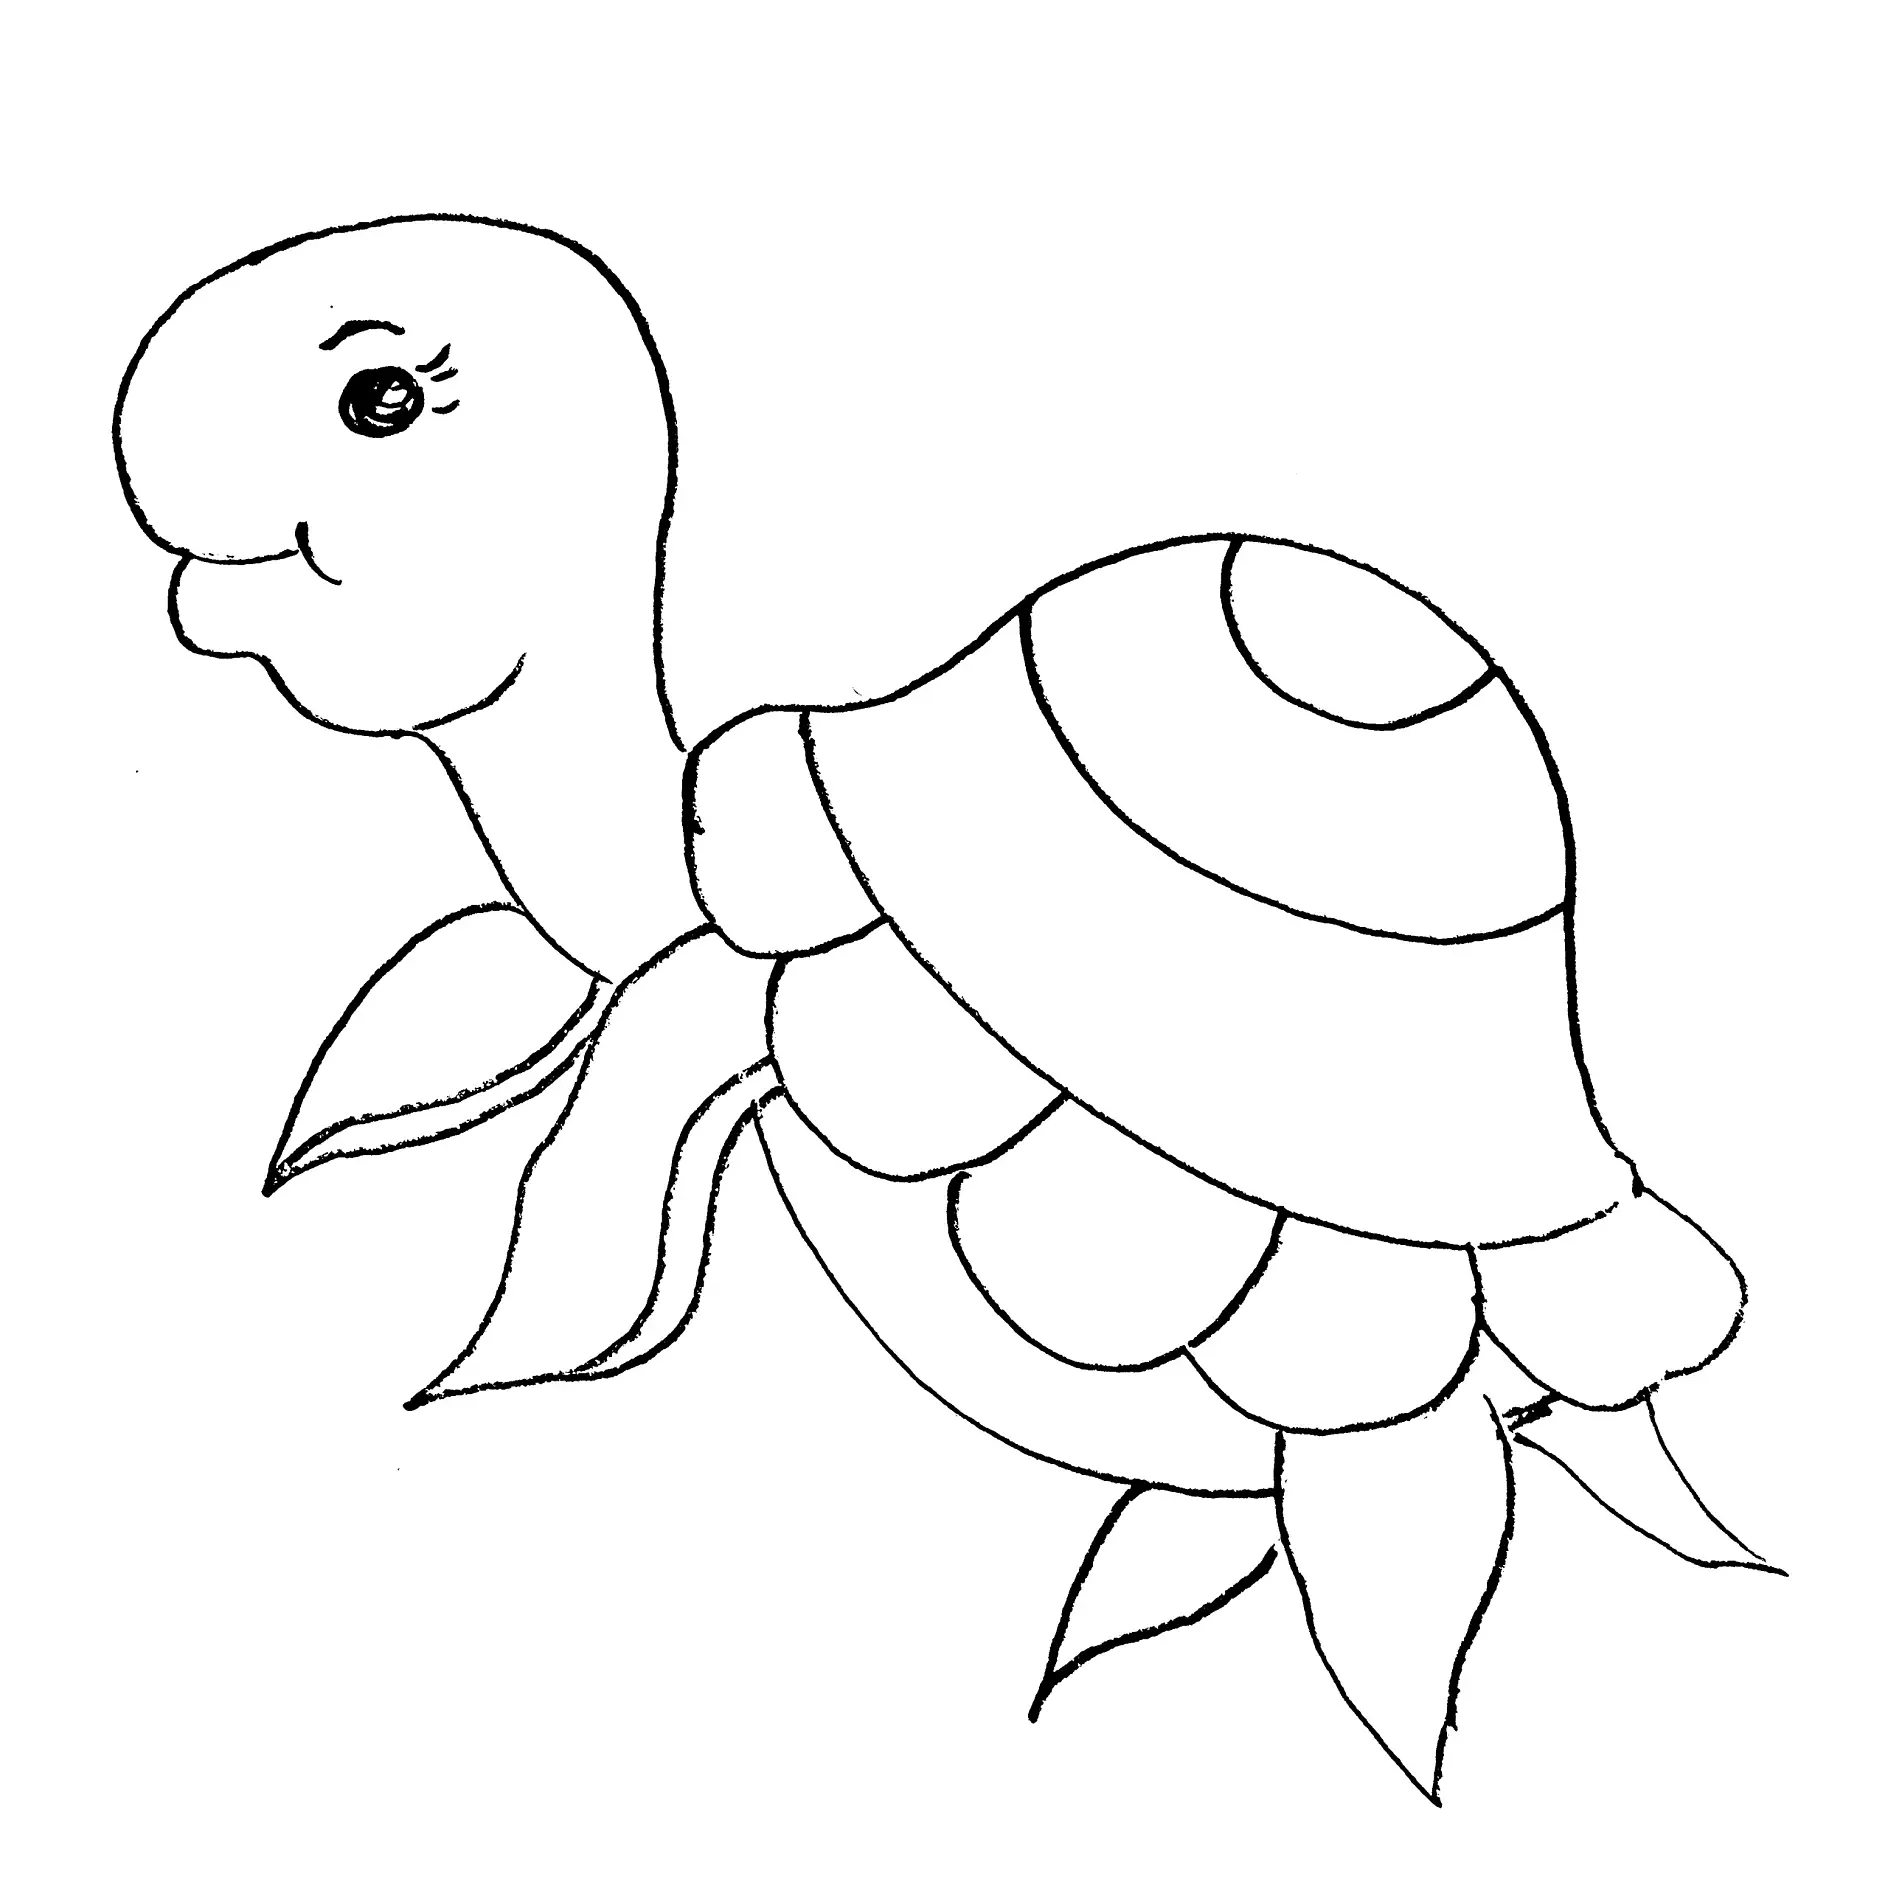 Ausmalbild Schildkröte mit großen Augen und Mustern